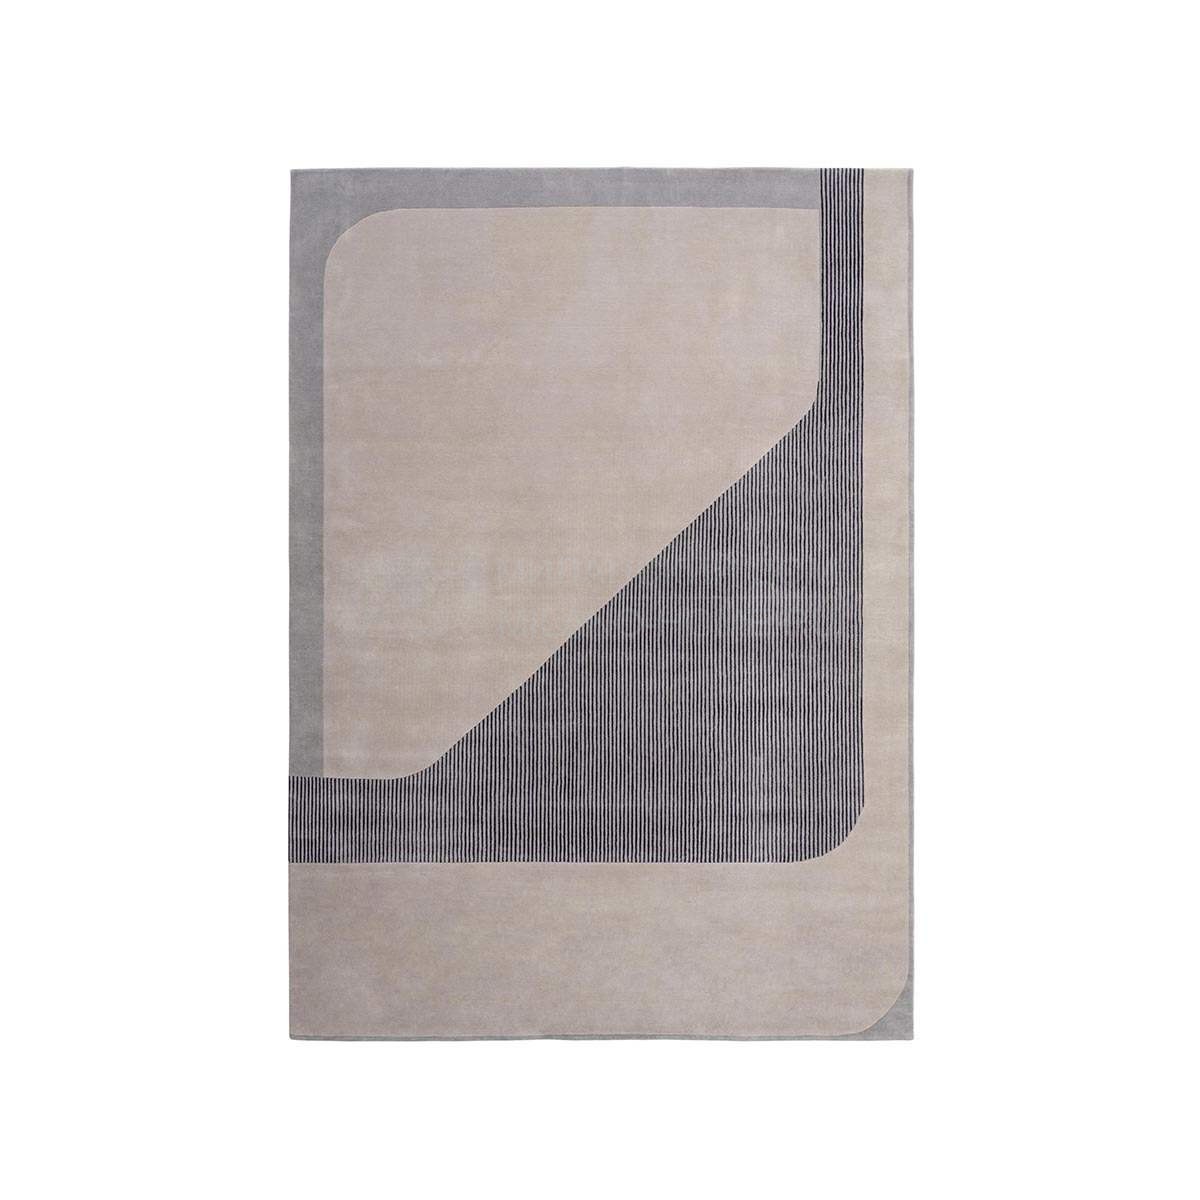 Ковер Zenit rectangular carpet из Италии фабрики TURRI